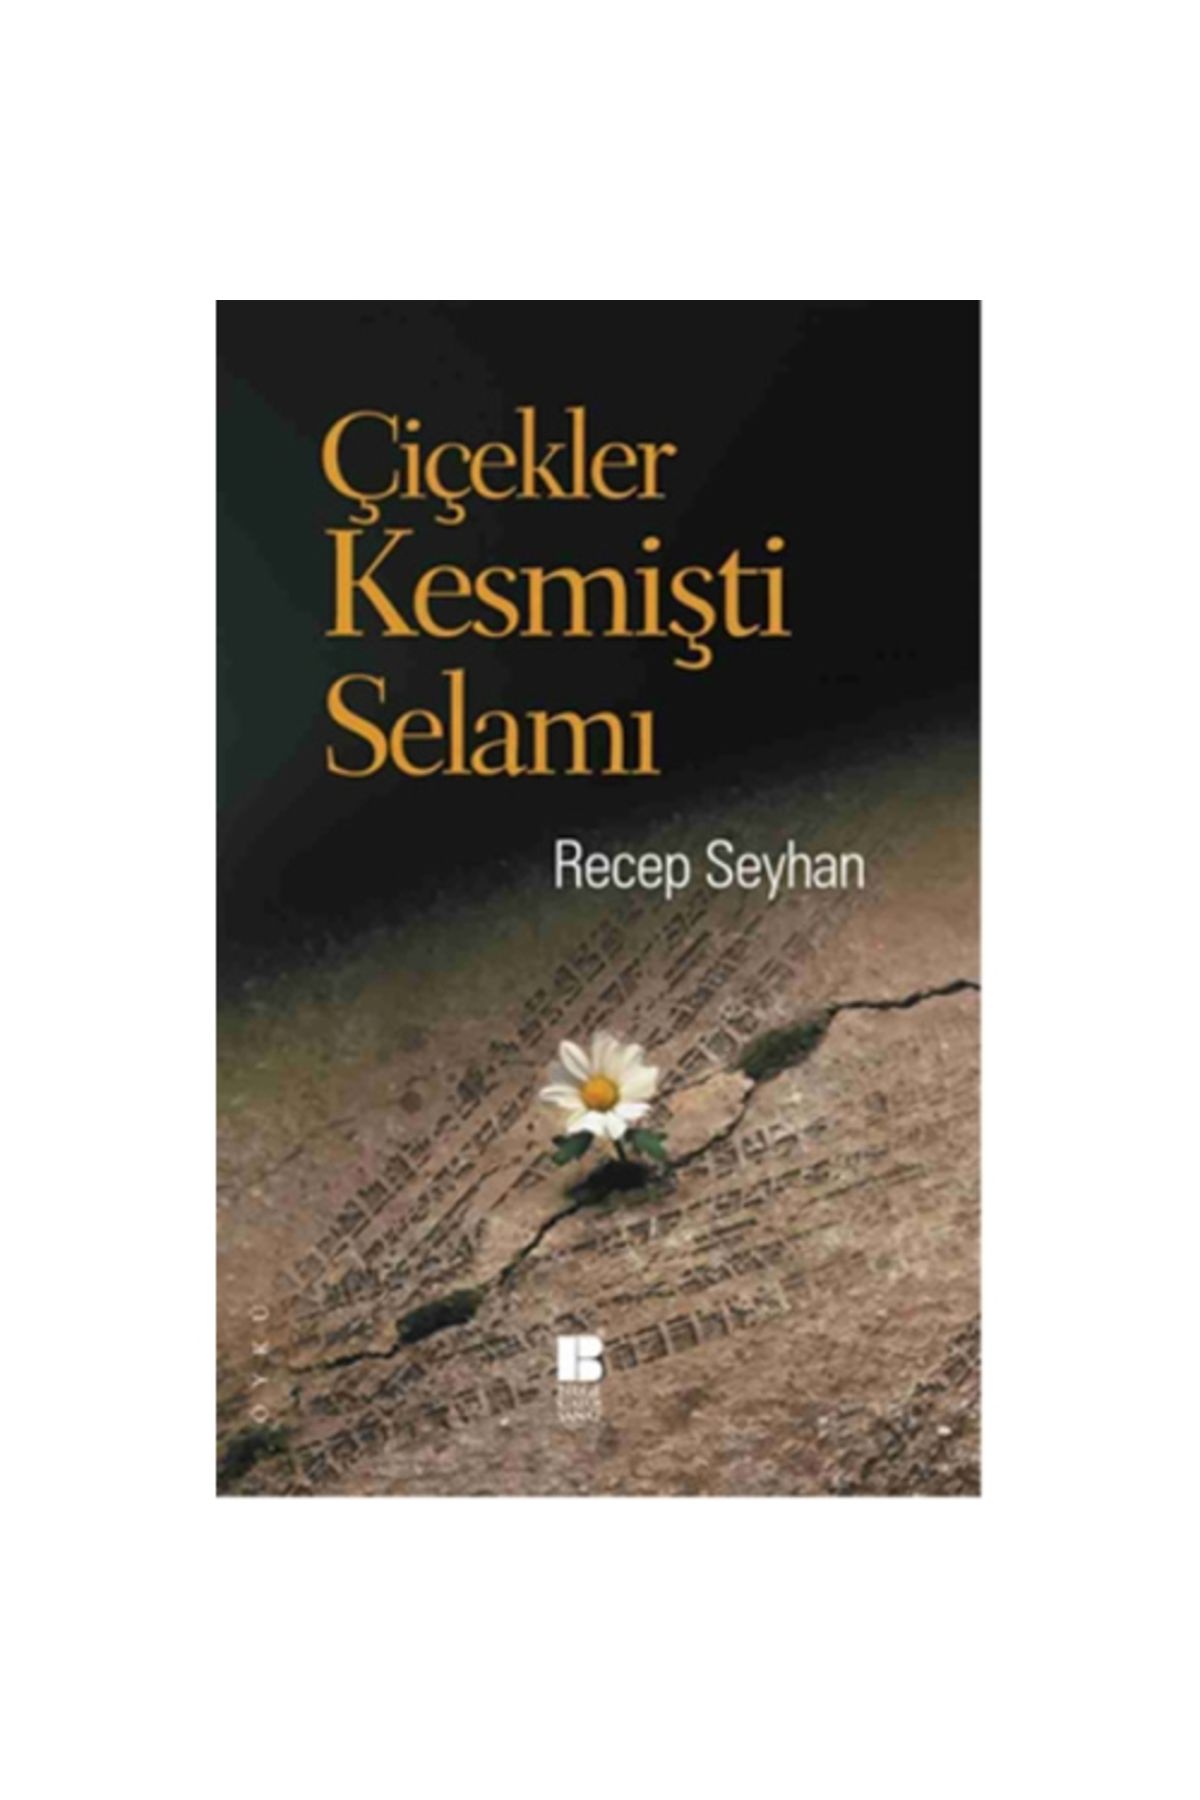 Bilge Kültür Sanat Çiçekler Kesmişti Selamı, Recep Seyhan, , Çiçekler Kesmişti Selamı Kitabı, 168 Sa